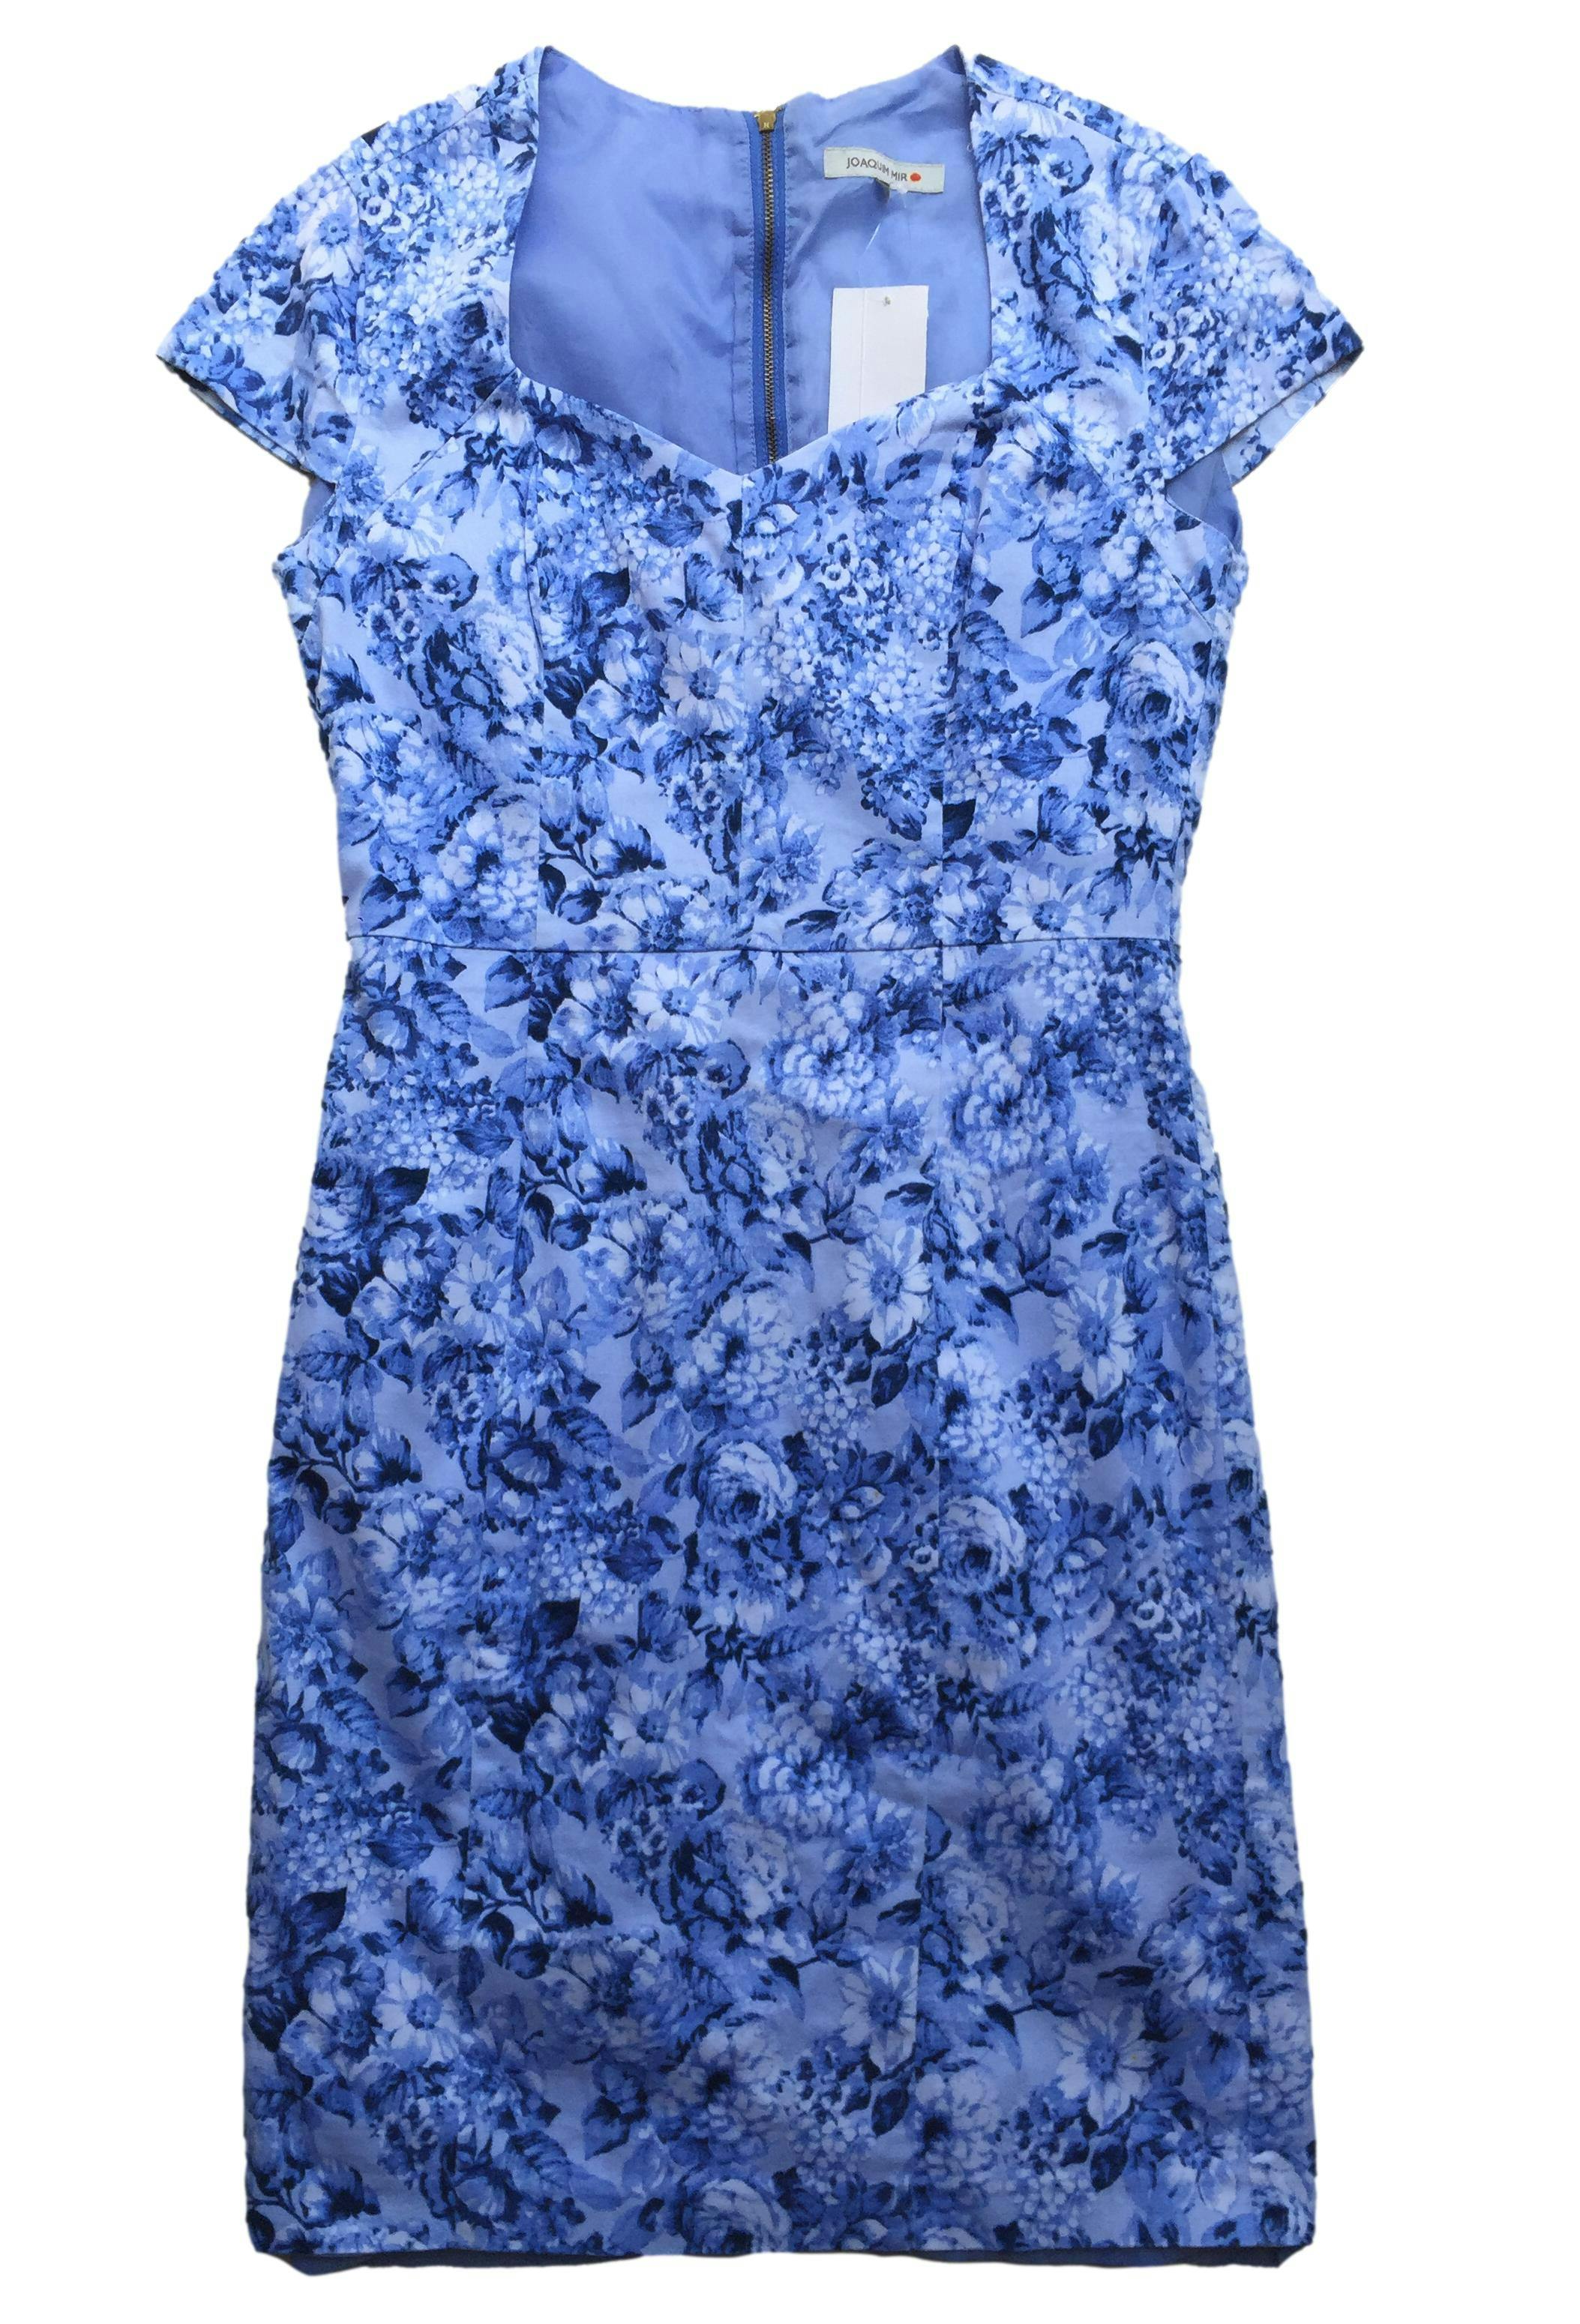 Vestido Joaquim Miro celeste con estampado floral, tela 97% algodón con forro, pinzas y cierre posterior. Busto 90cm, Largo 90cm.